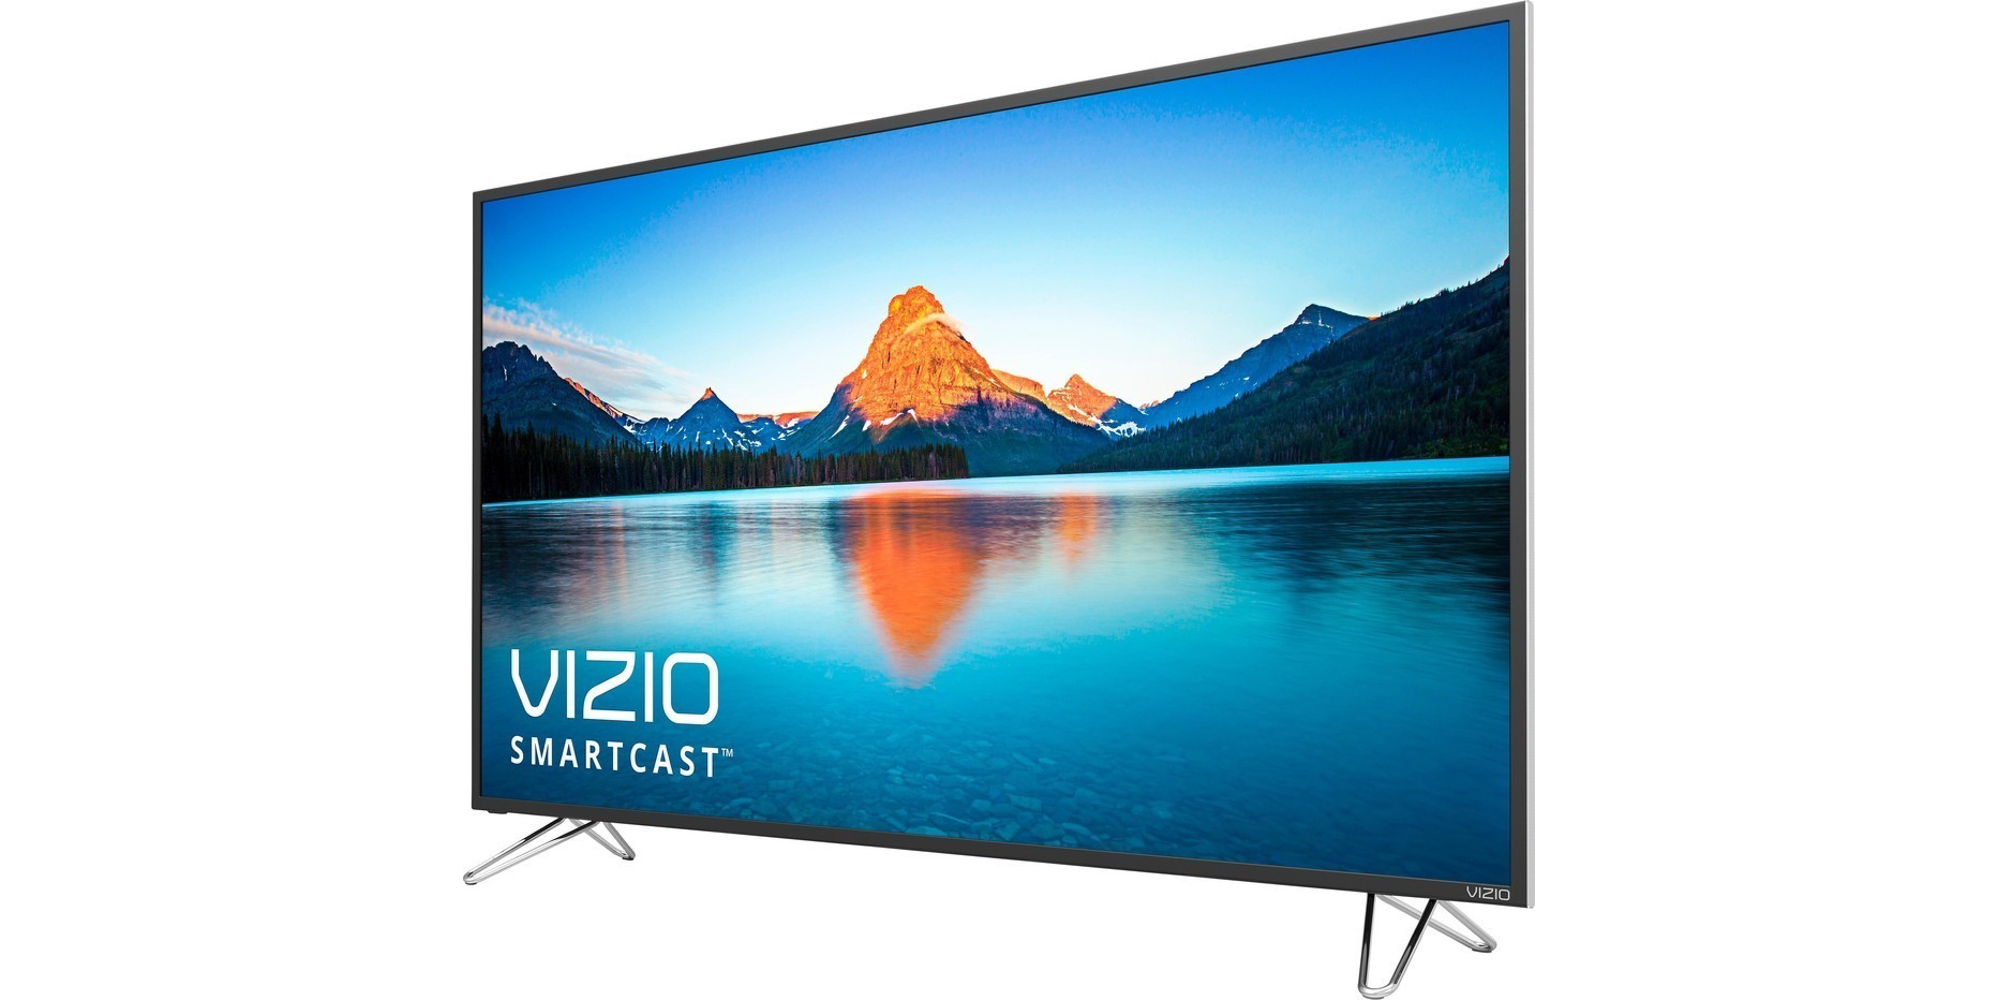 Vizio SmartCast 65" 4K UHDTV w/ Google Cast drops to 800 (Refub. Orig